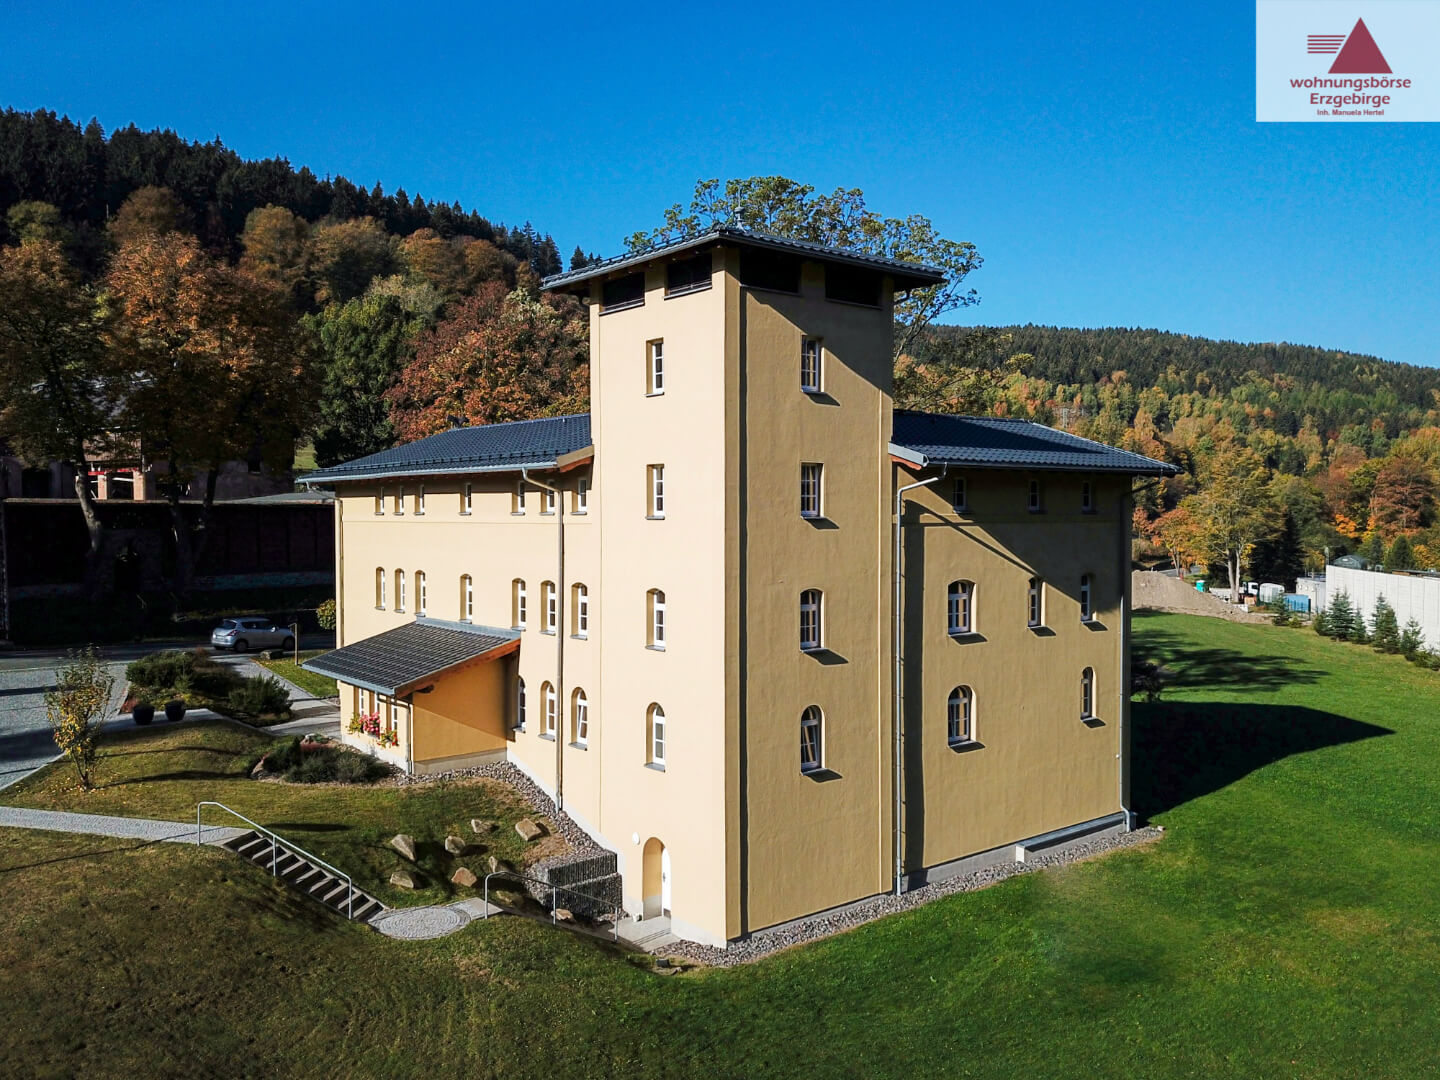 Verkauf Villa Sternkopf in Rittersgrün durch Wohnungsbörse Erzgebirge